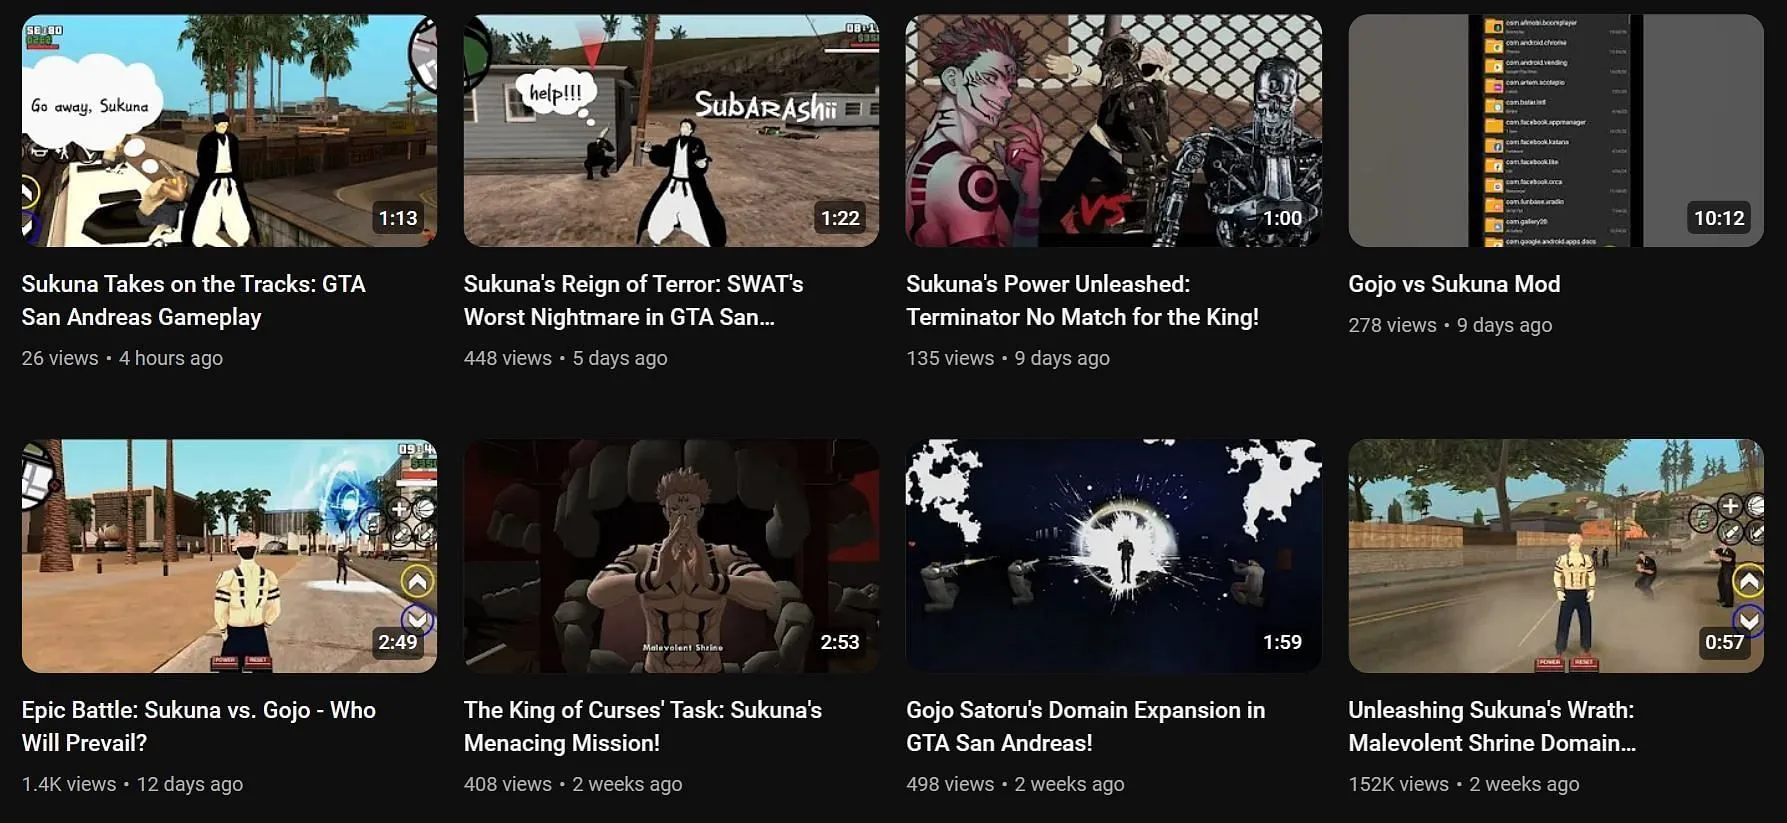 Vidéos Jujutsu Kaisen x GTA publiées par @larcsifer sur YouTube (Image via YouTube/@larcsifer)